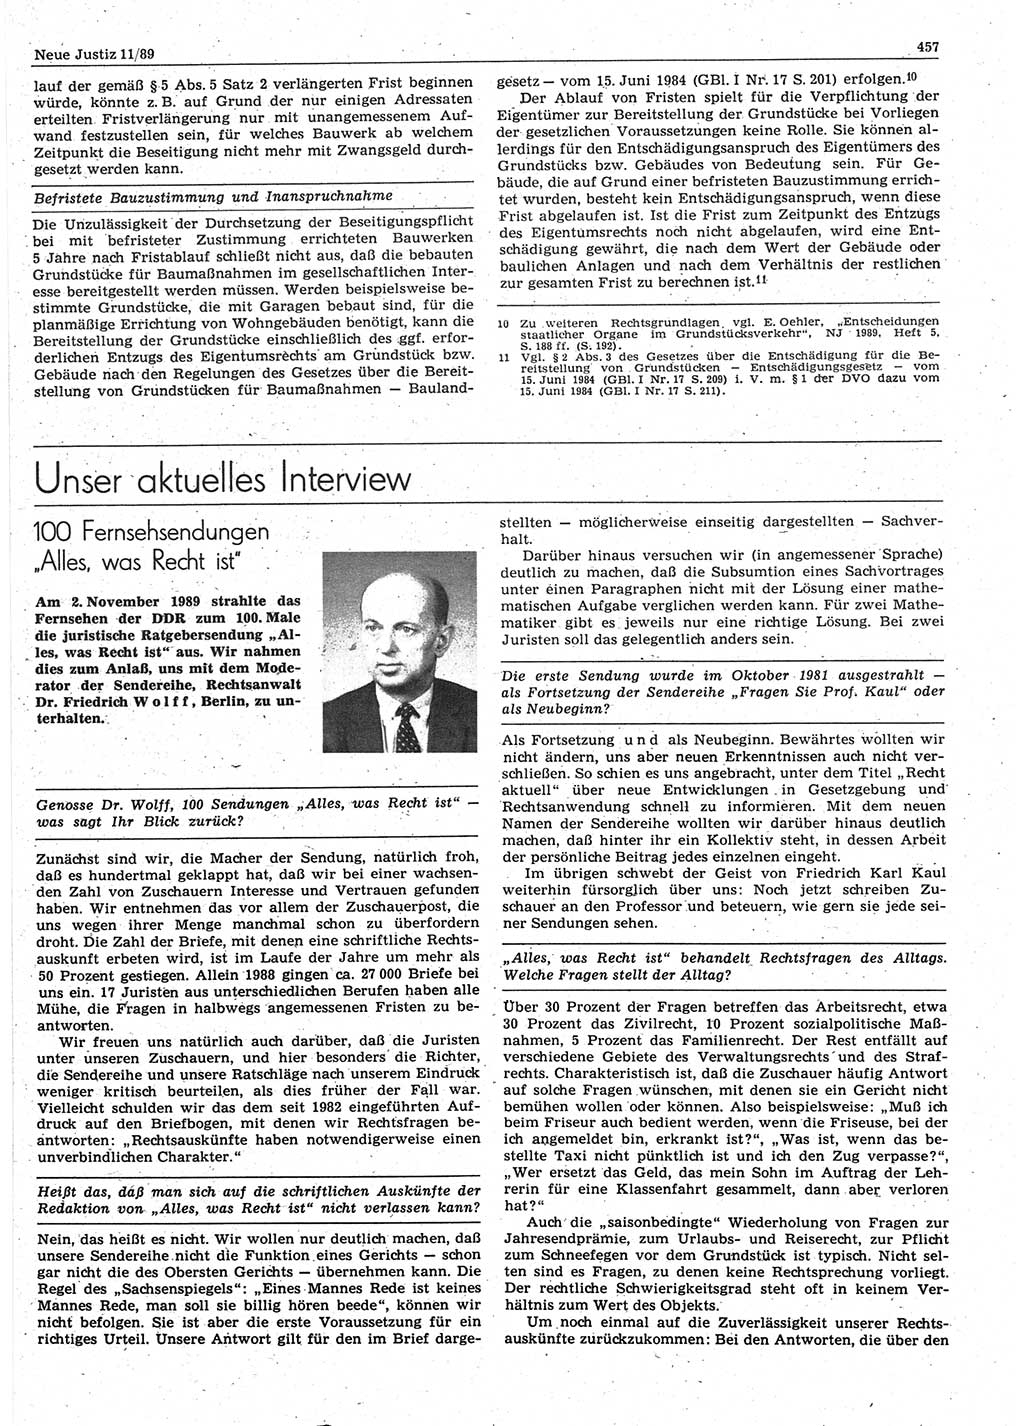 Neue Justiz (NJ), Zeitschrift für sozialistisches Recht und Gesetzlichkeit [Deutsche Demokratische Republik (DDR)], 43. Jahrgang 1989, Seite 457 (NJ DDR 1989, S. 457)